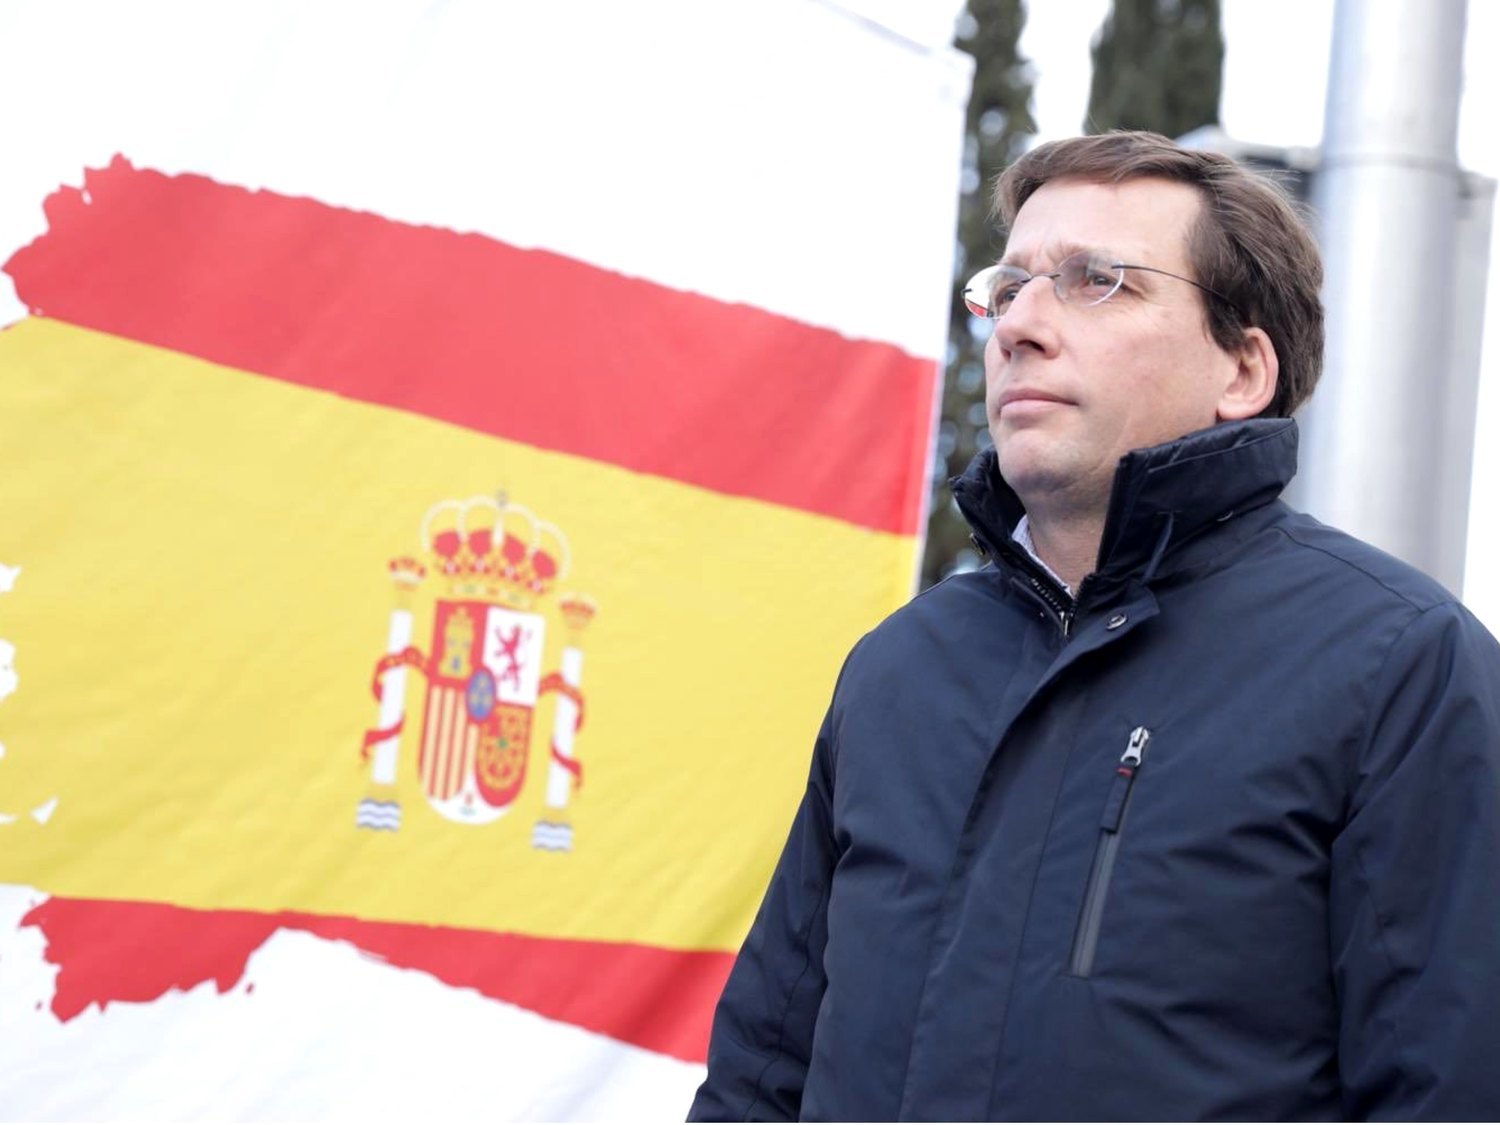 Almeida gasta 17.000 euros en instalar otra bandera de España en una rotonda de Madrid